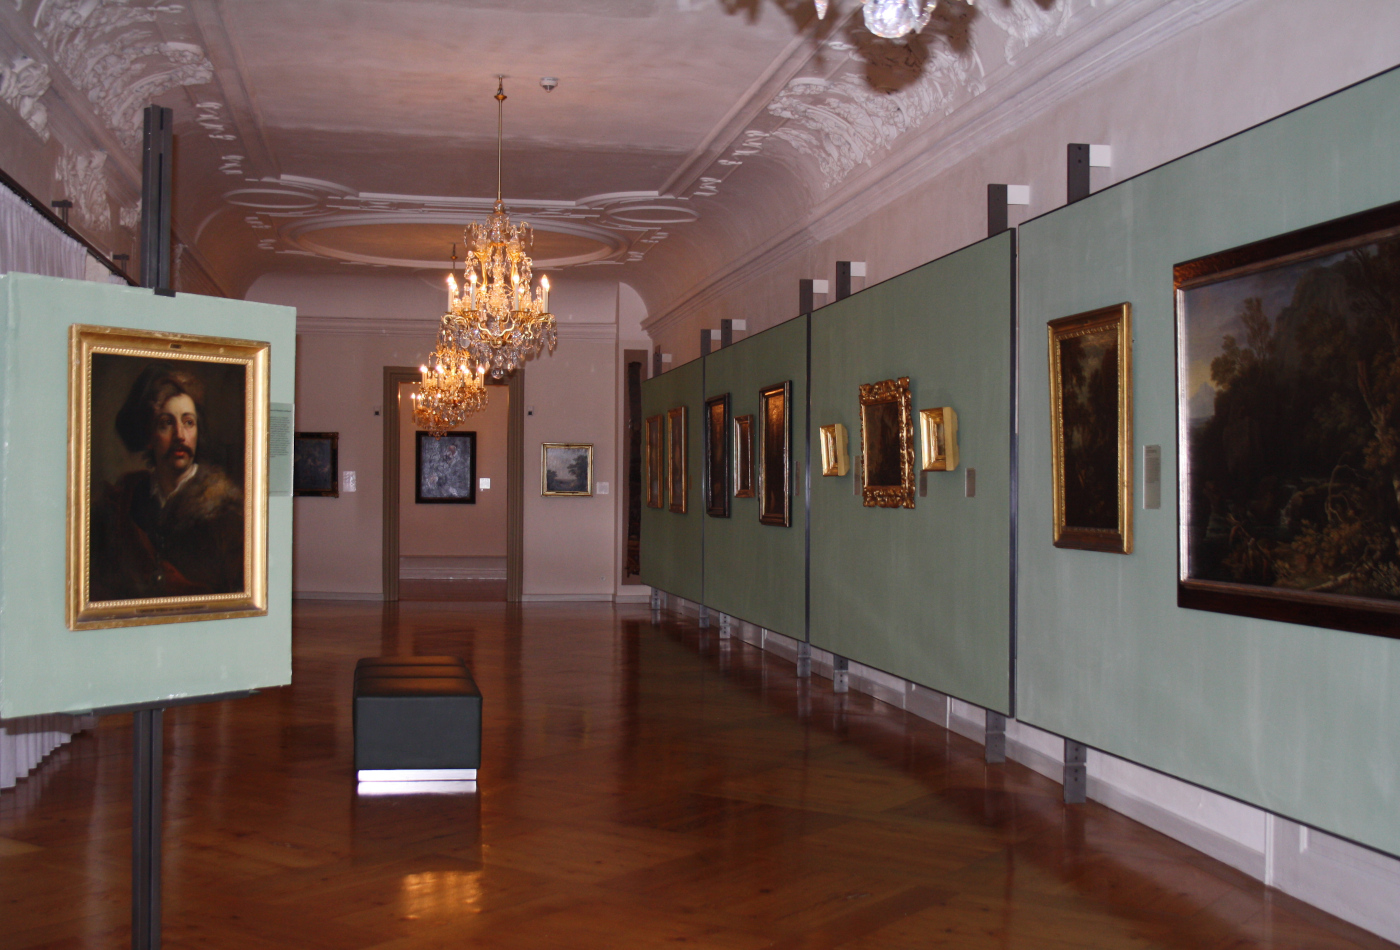 Blick in einen langen Flur der Barockgalerie, in der zahlreiche Gemälde hängen.